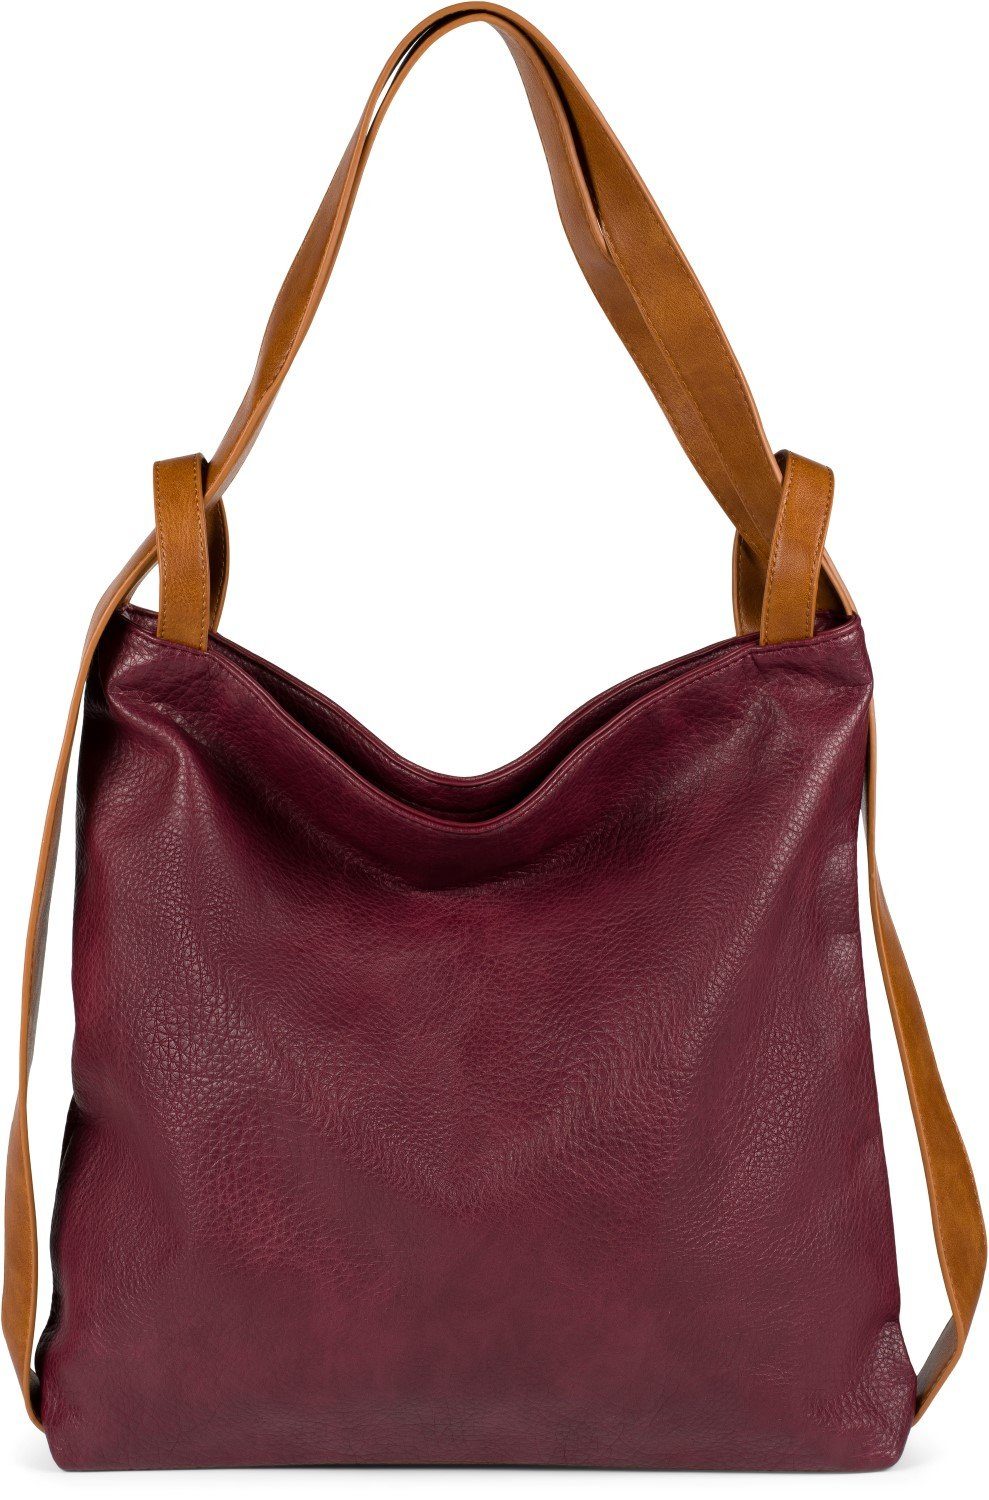 Damen Handtaschen styleBREAKER Schultertasche, 2 in 1 Rucksackhandtasche im Vintage Look